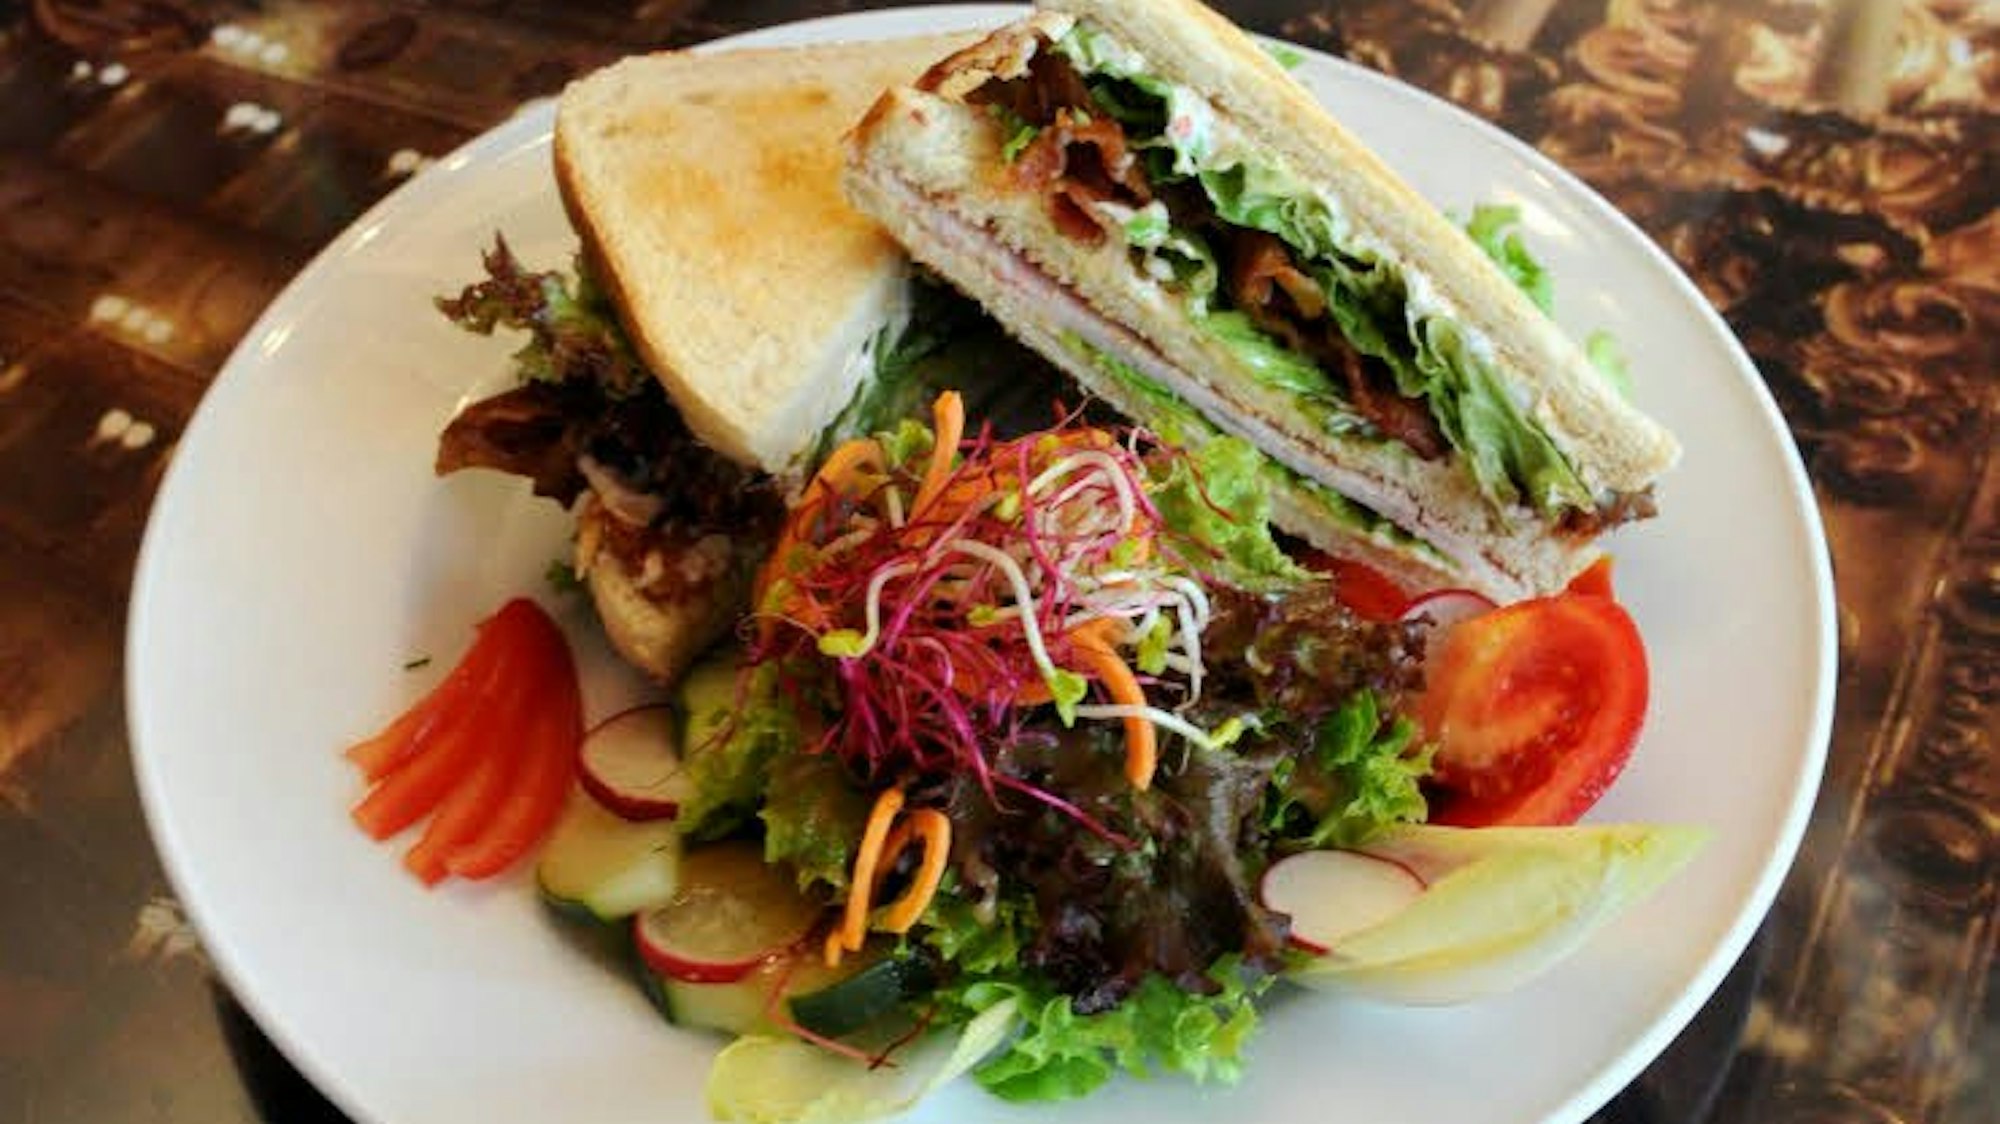 zwei Sandwiches mit Salat auf einem Teller